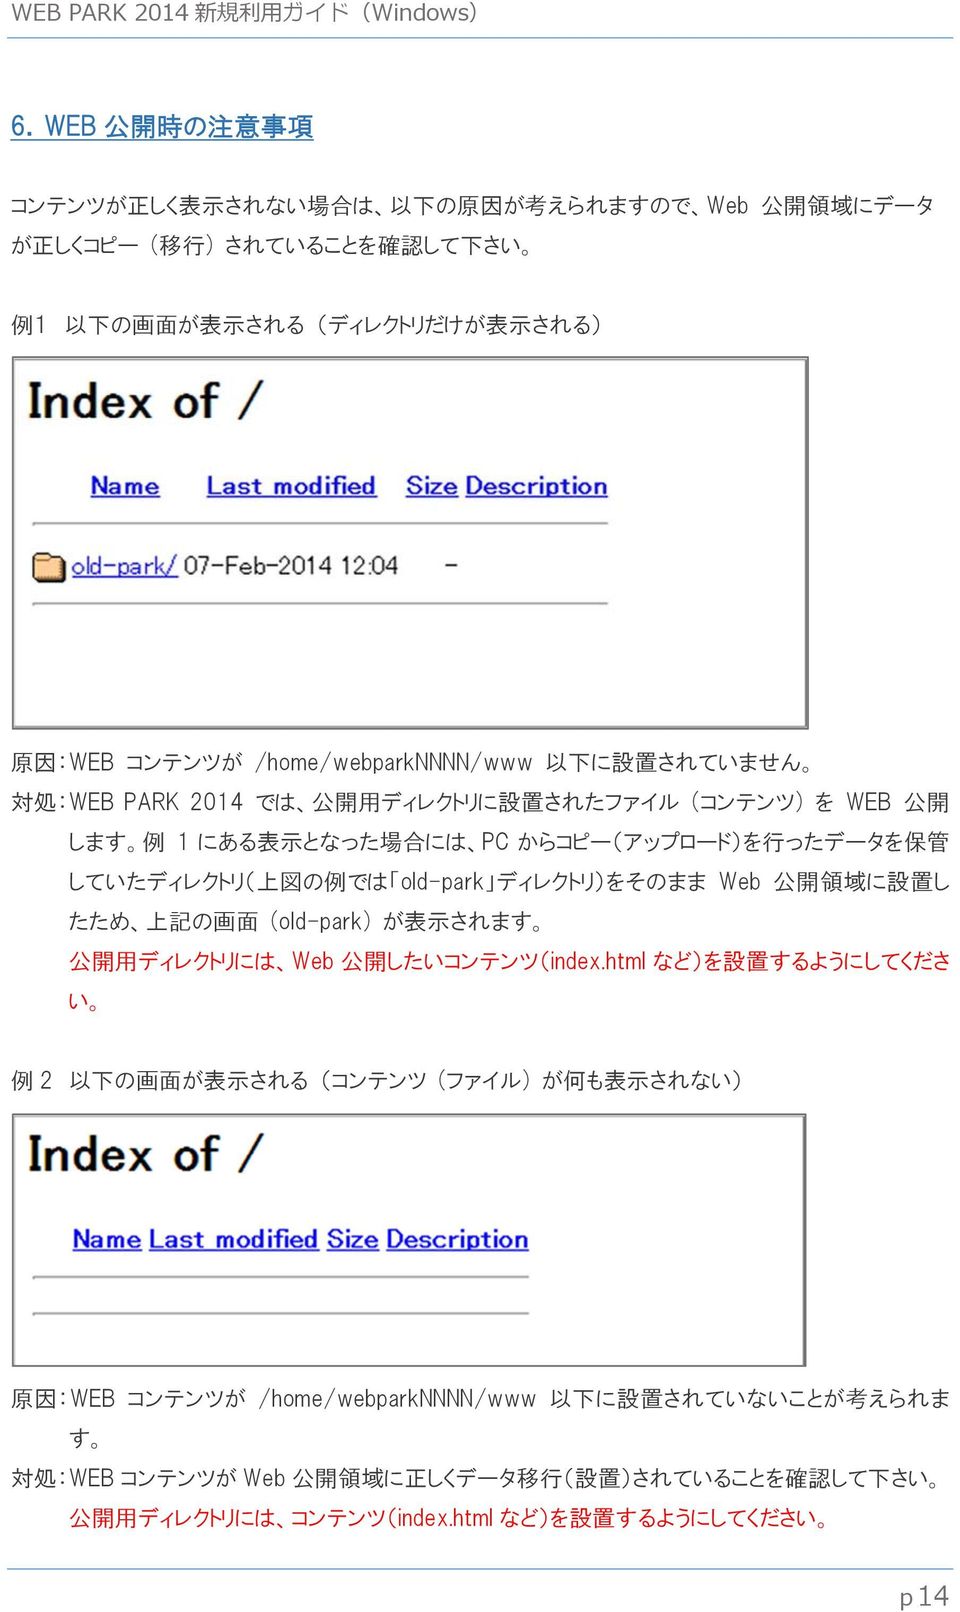 old-park ディレクトリ)をそのまま Web 公 開 領 域 に 設 置 し たため 上 記 の 画 面 (old-park) が 表 示 されます 公 開 用 ディレクトリには Web 公 開 したいコンテンツ(index.